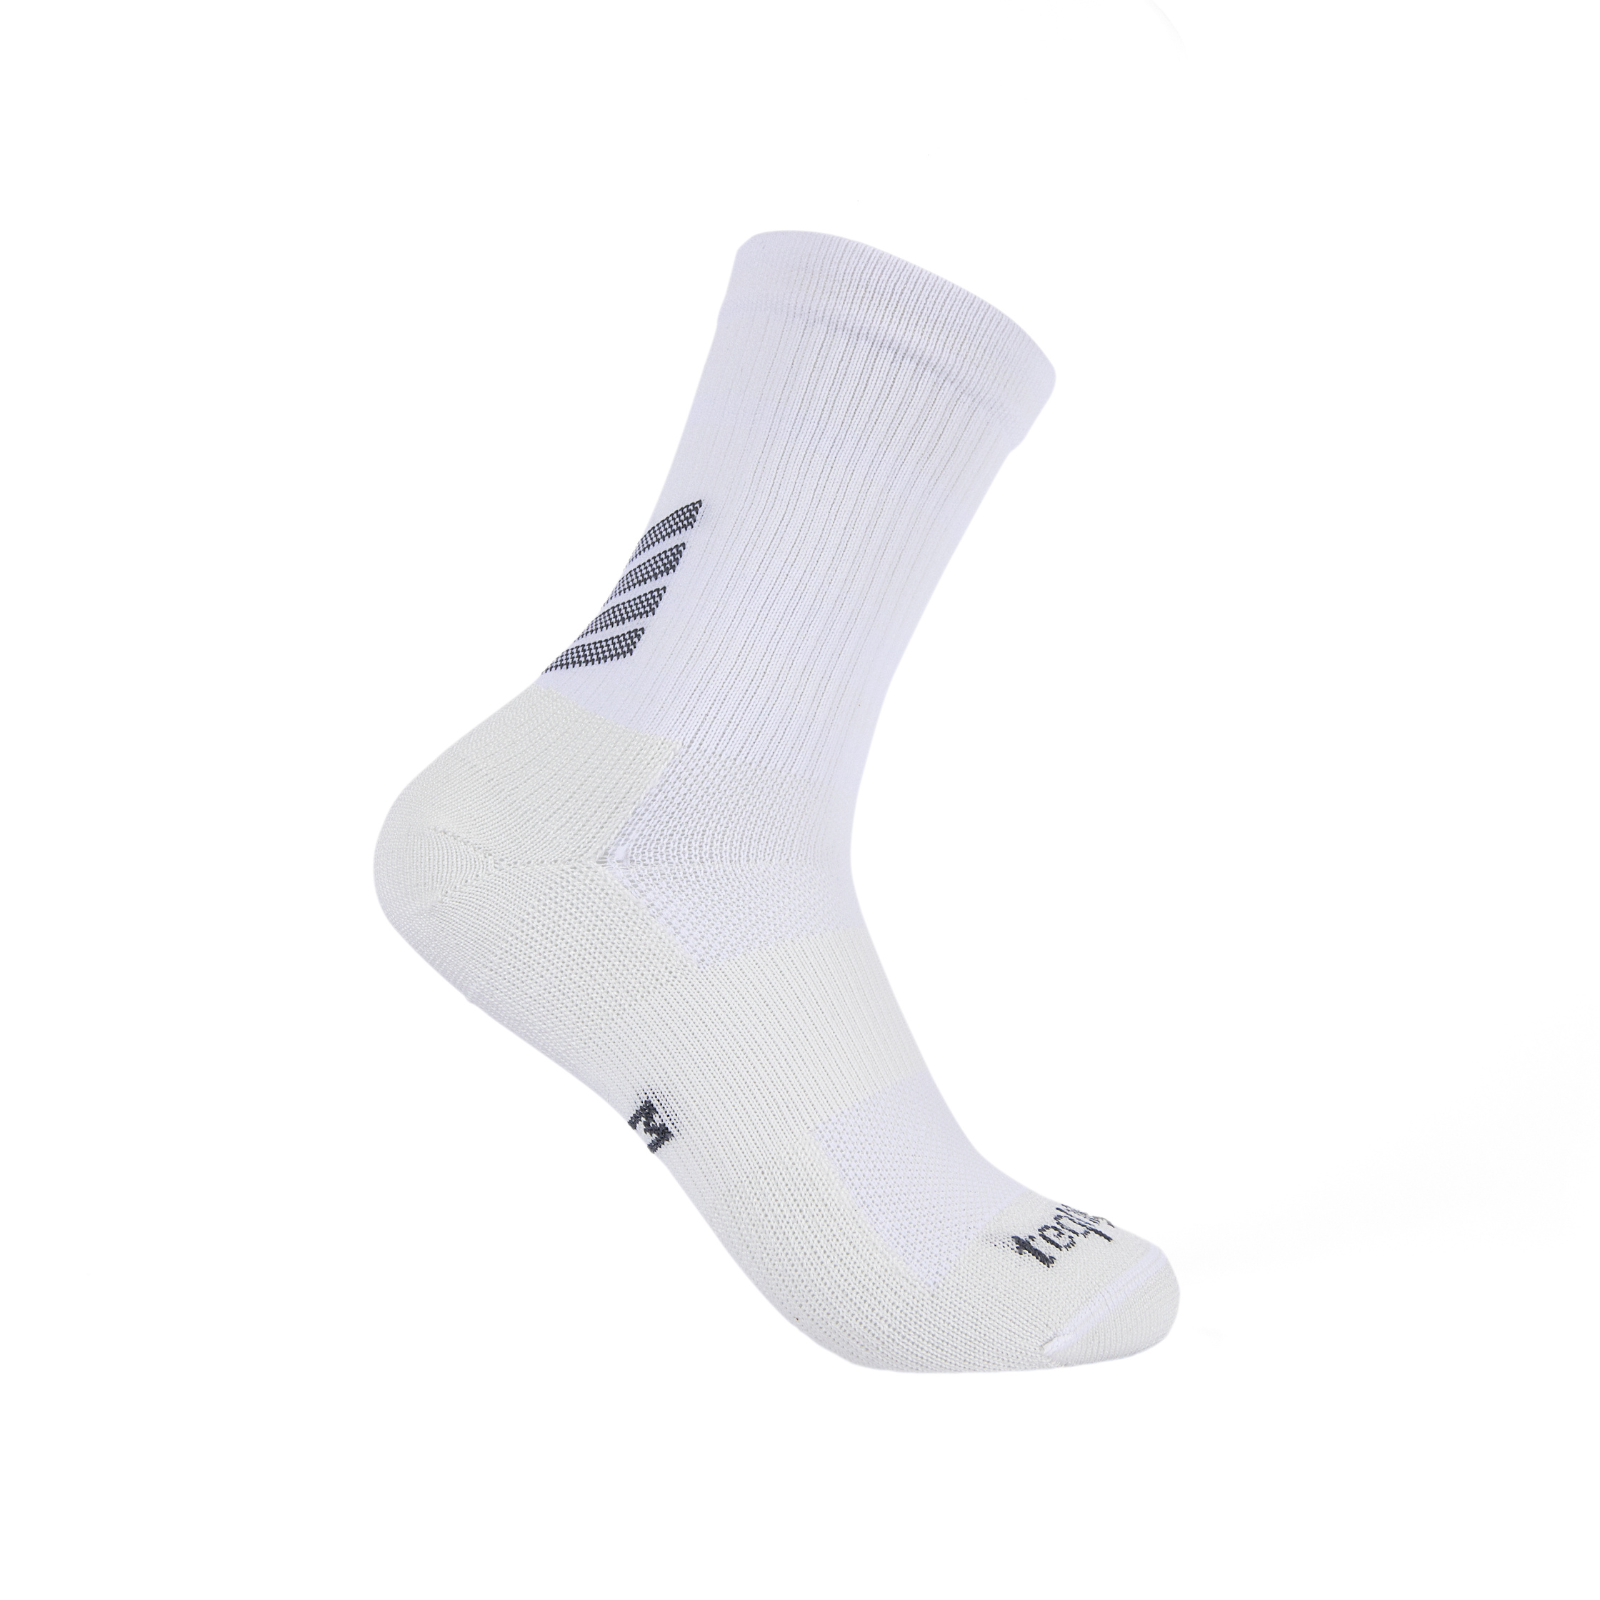 Teqnigrip Crew Sock / White - Grip Socks for Soccer, Lacrosse, Sport